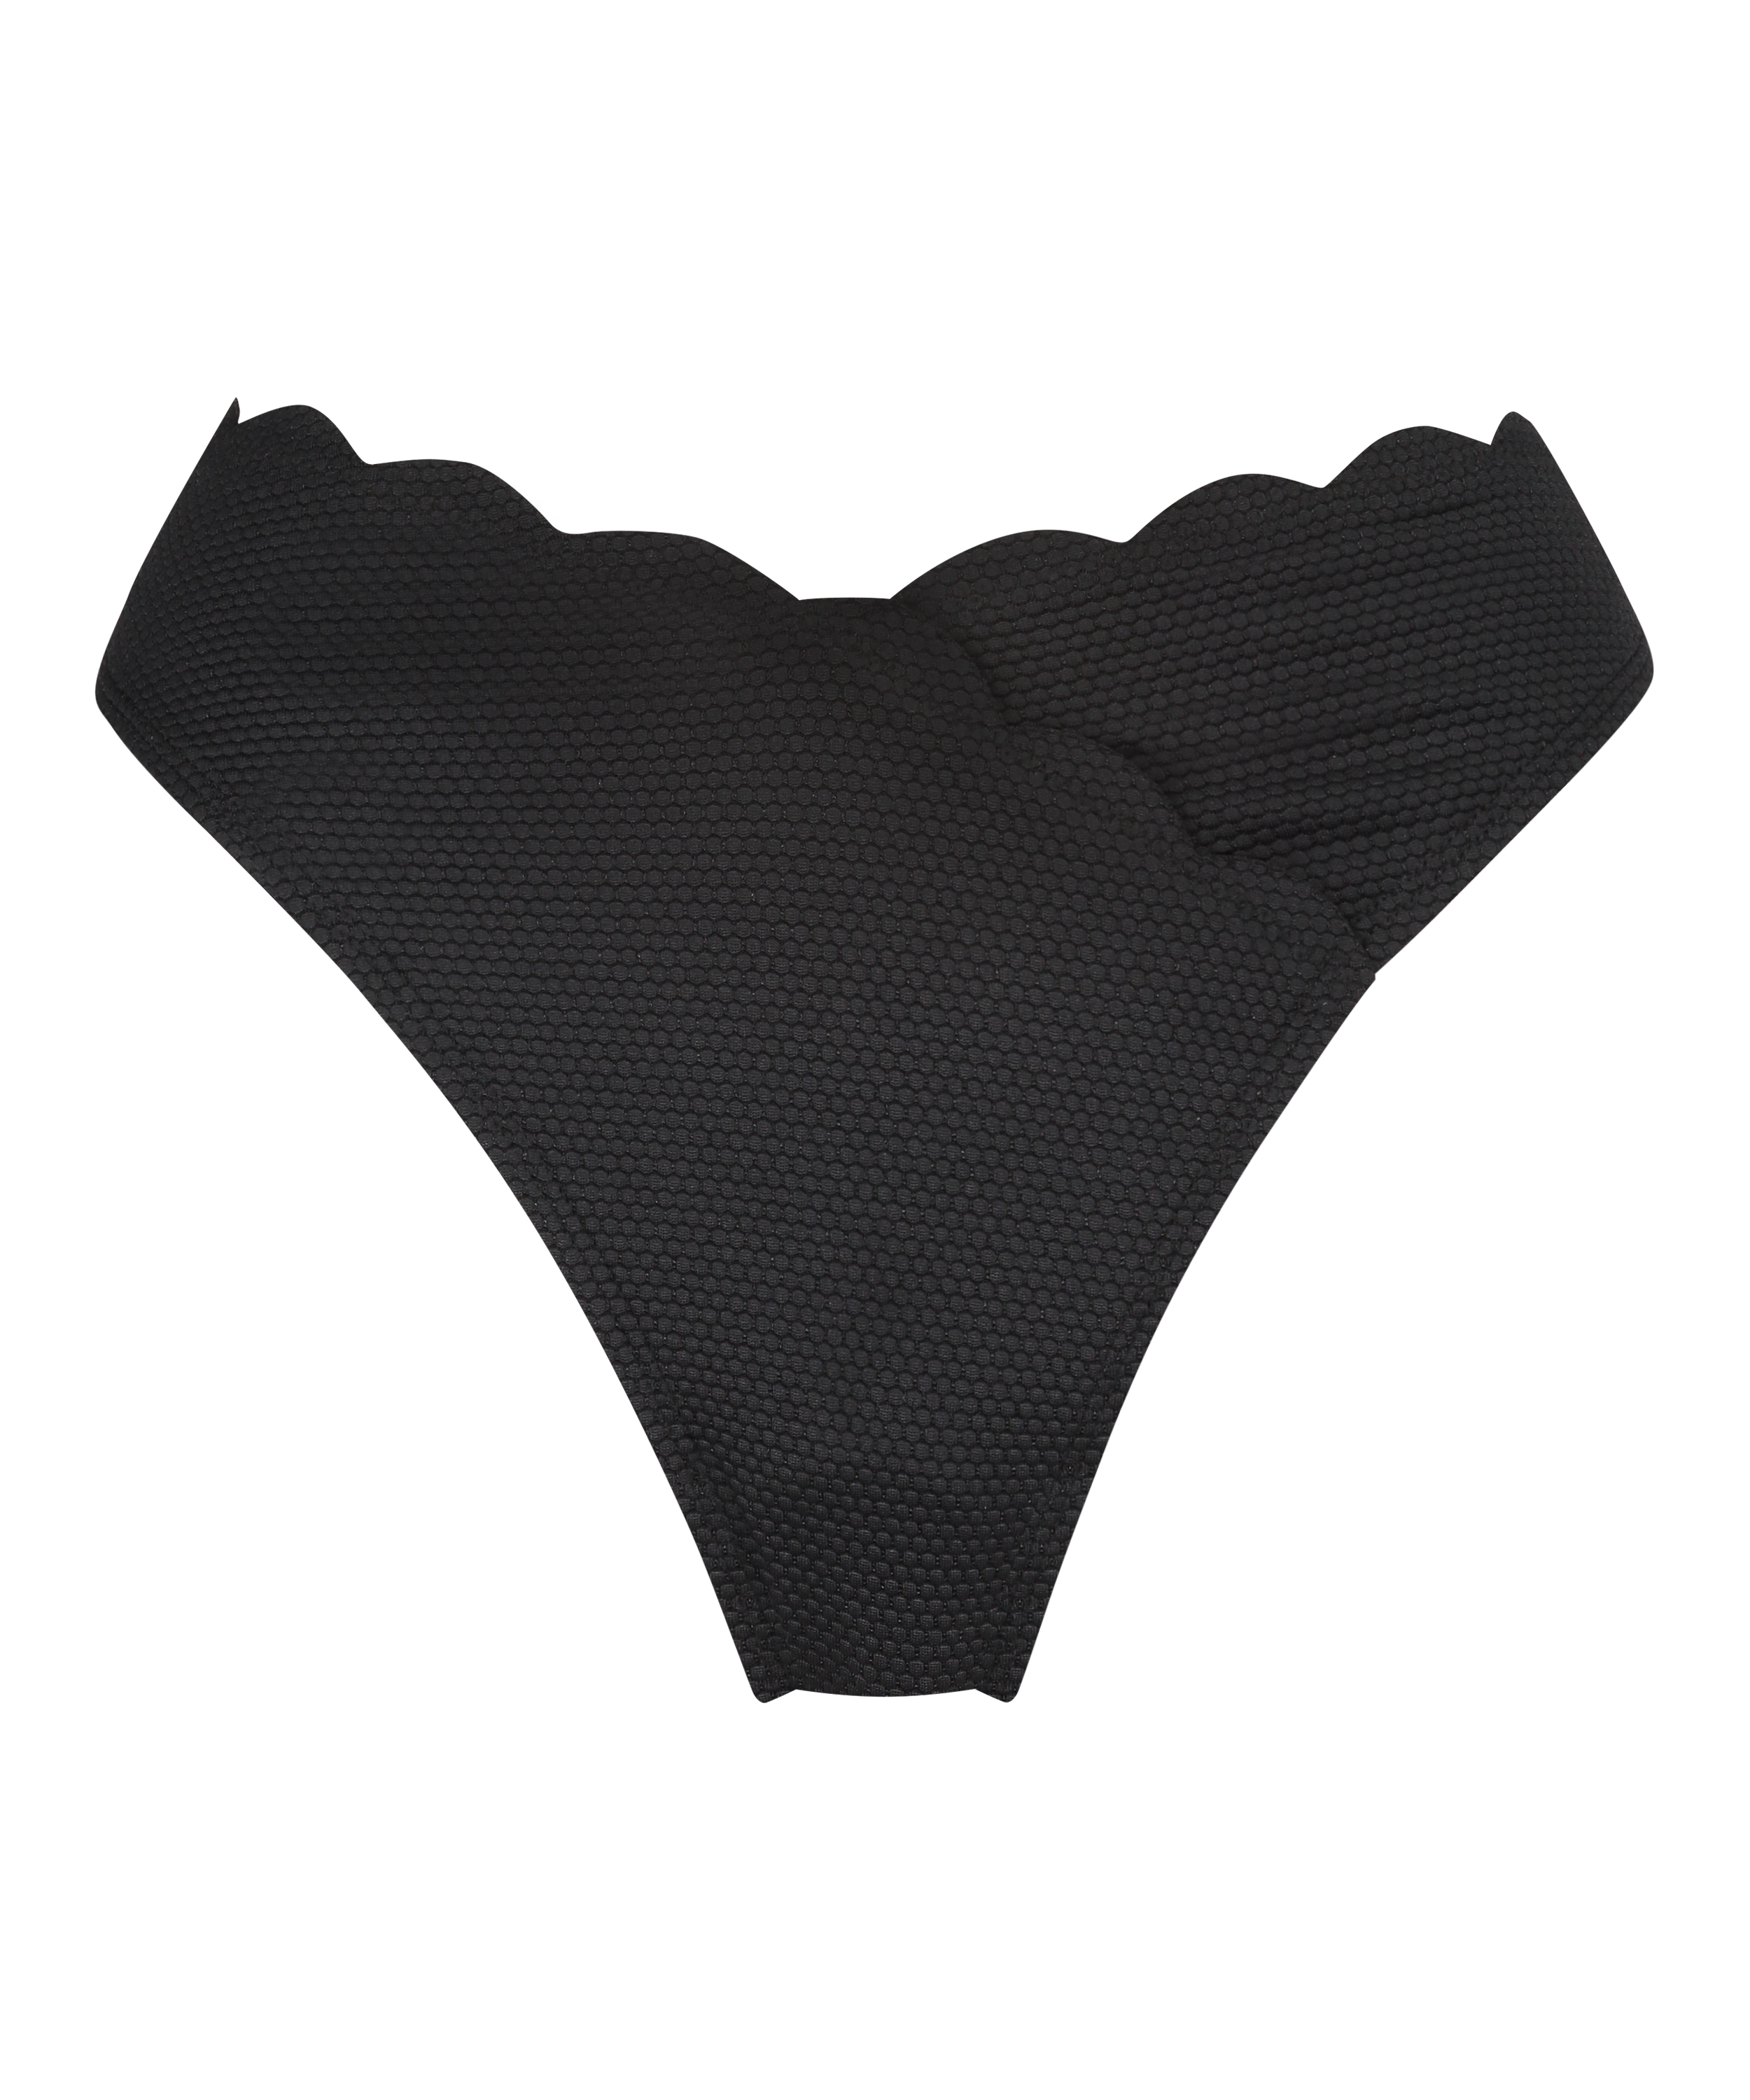 Højt udskåret bikinitrusse Scallop, sort, main